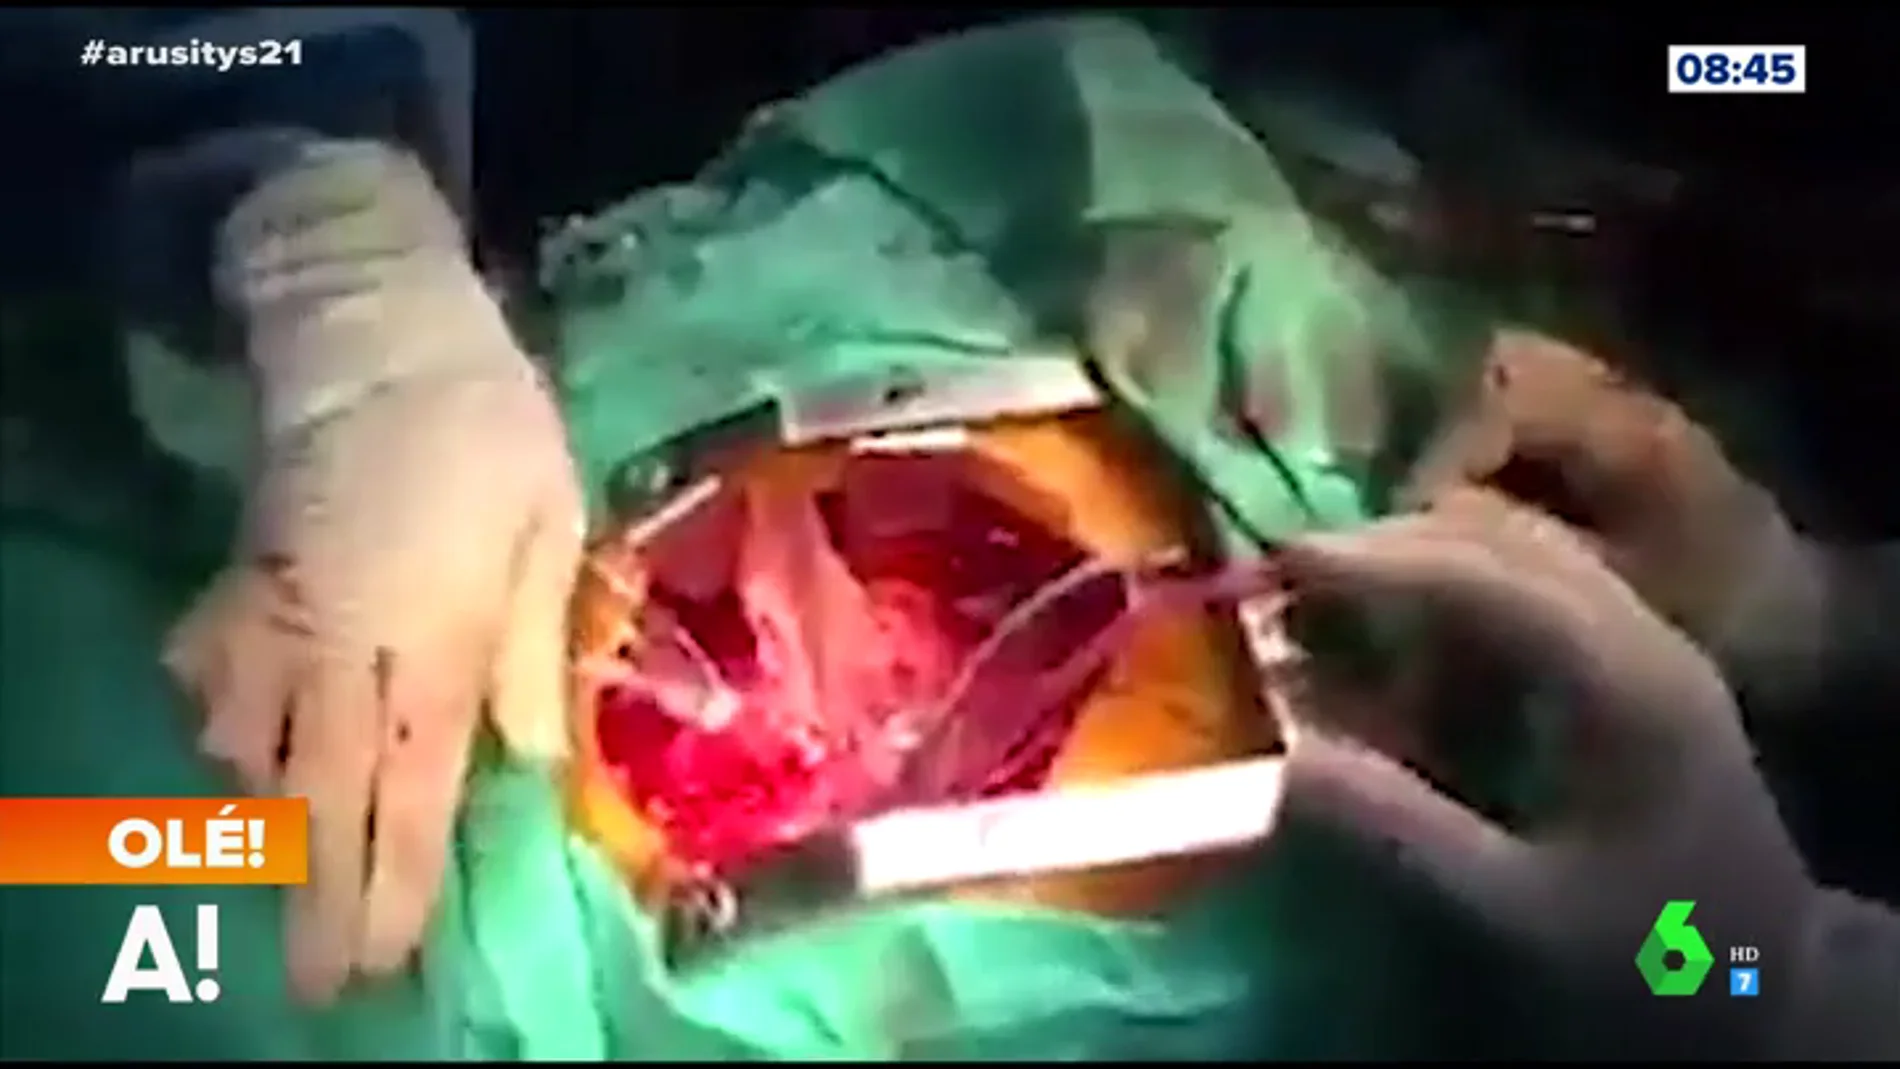 Las espectaculares imágenes de una operación a corazón abierto durante un terremoto 